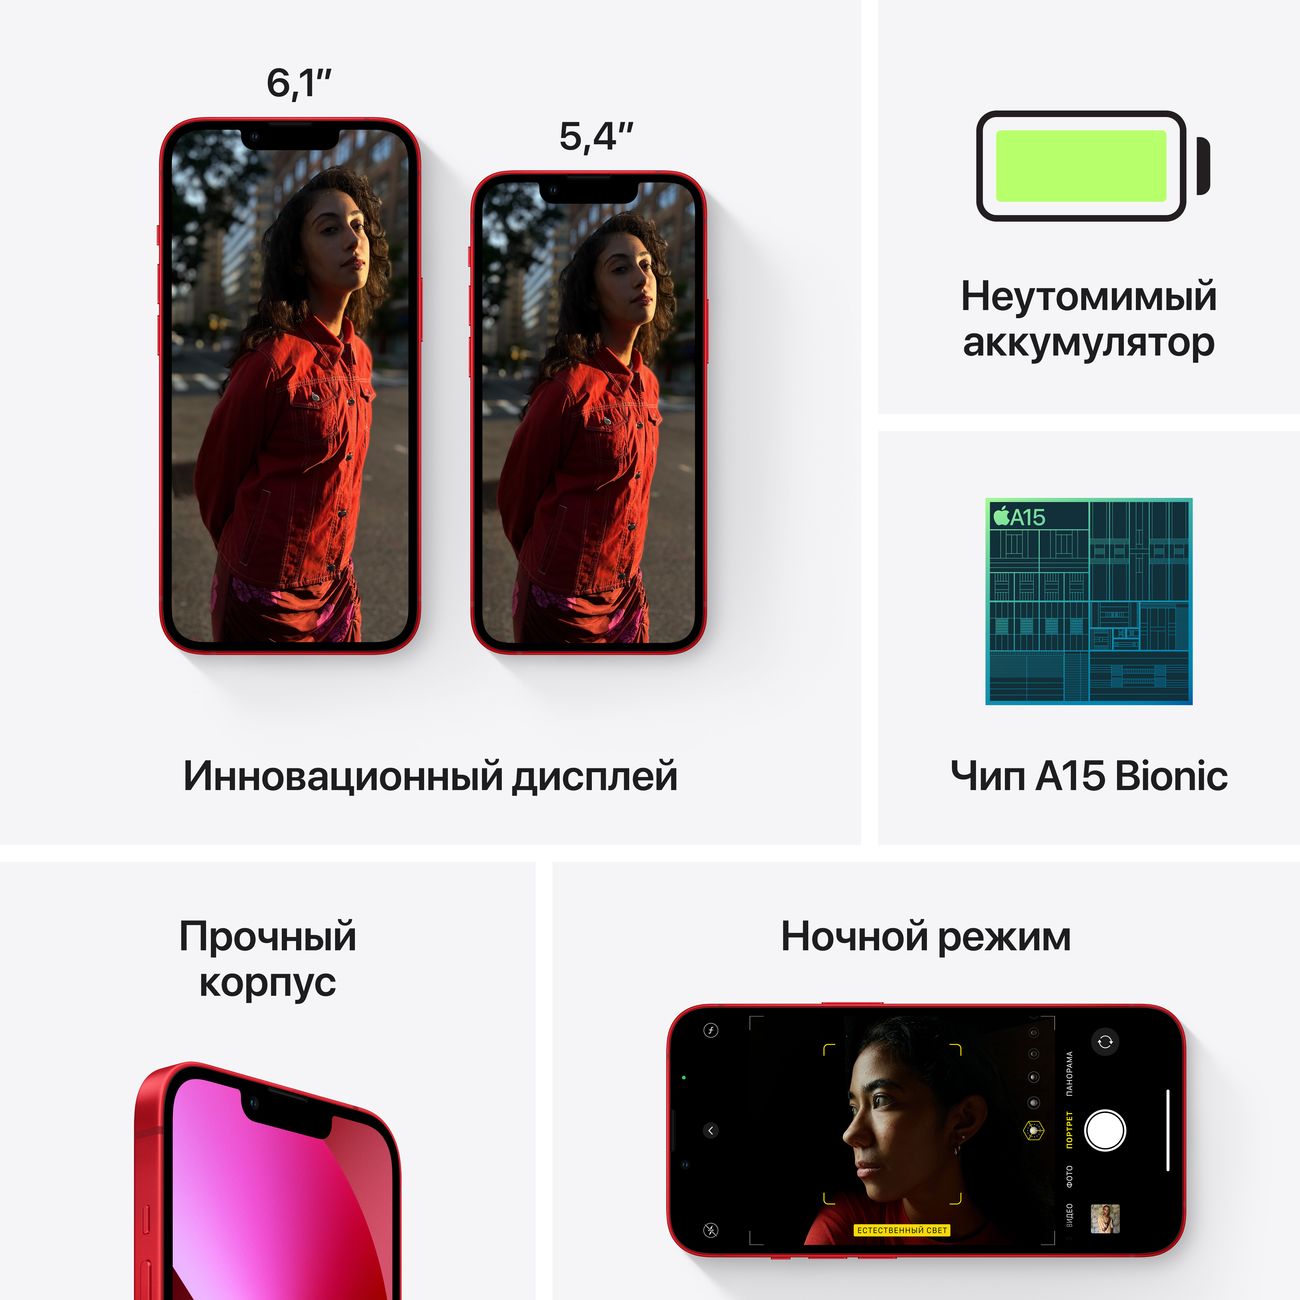 Купить смартфон apple iphone 13 512gb pink Apple iPhone 13 в официальном магазине Apple, Samsung, Xiaomi. iPixel.ru Купить, заказ, кредит, рассрочка, отзывы,  характеристики, цена,  фотографии, в подарок.